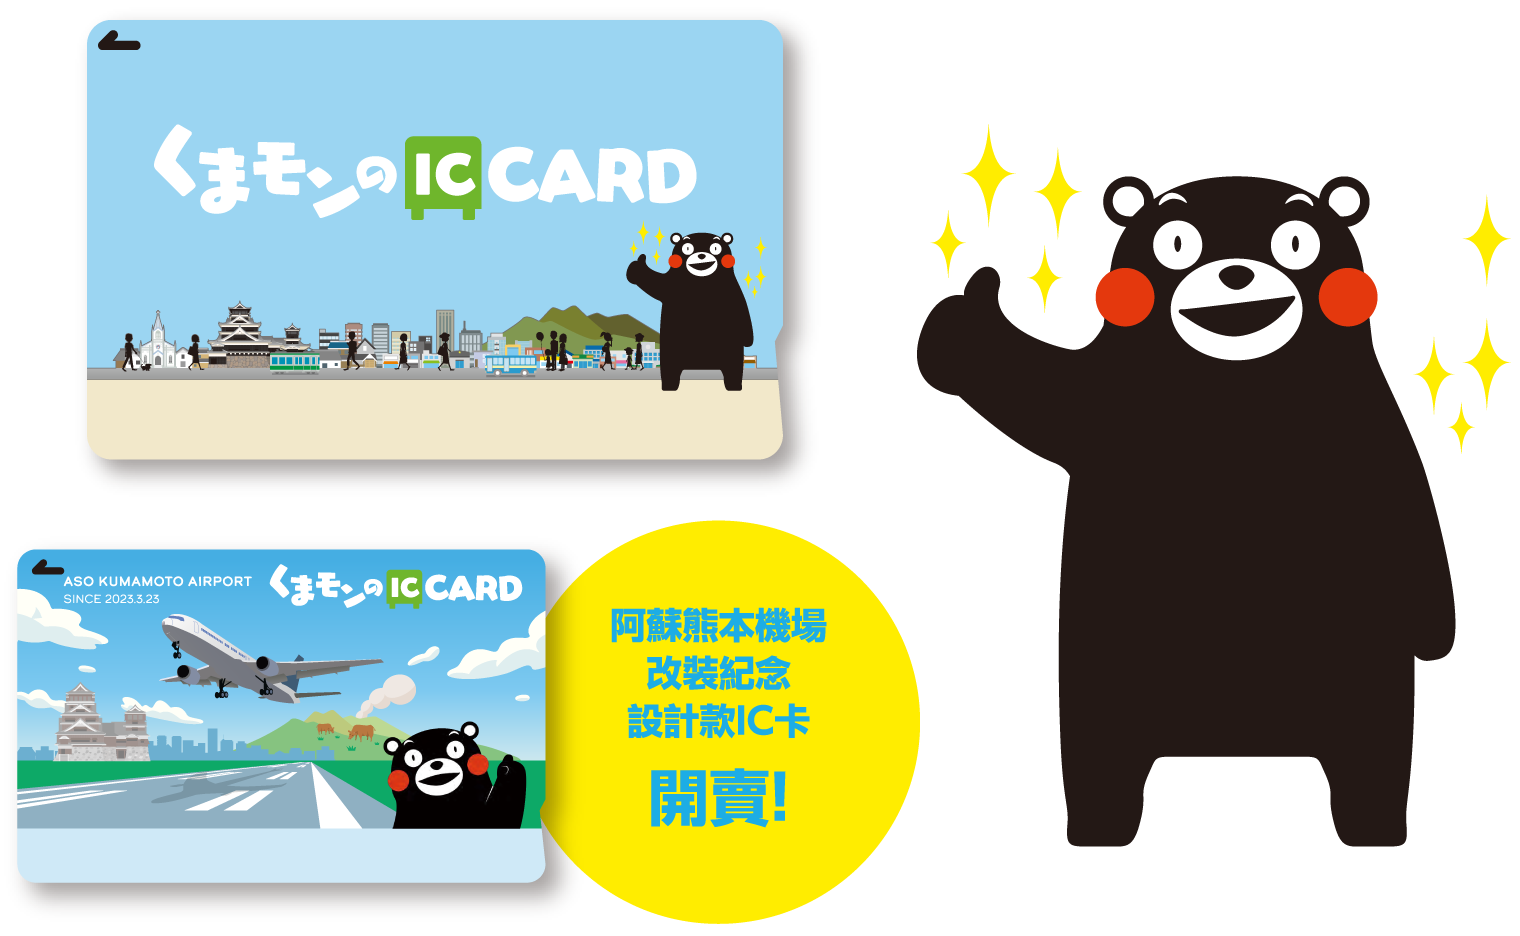 阿蘇熊本機場改裝紀念設計款IC卡開賣!